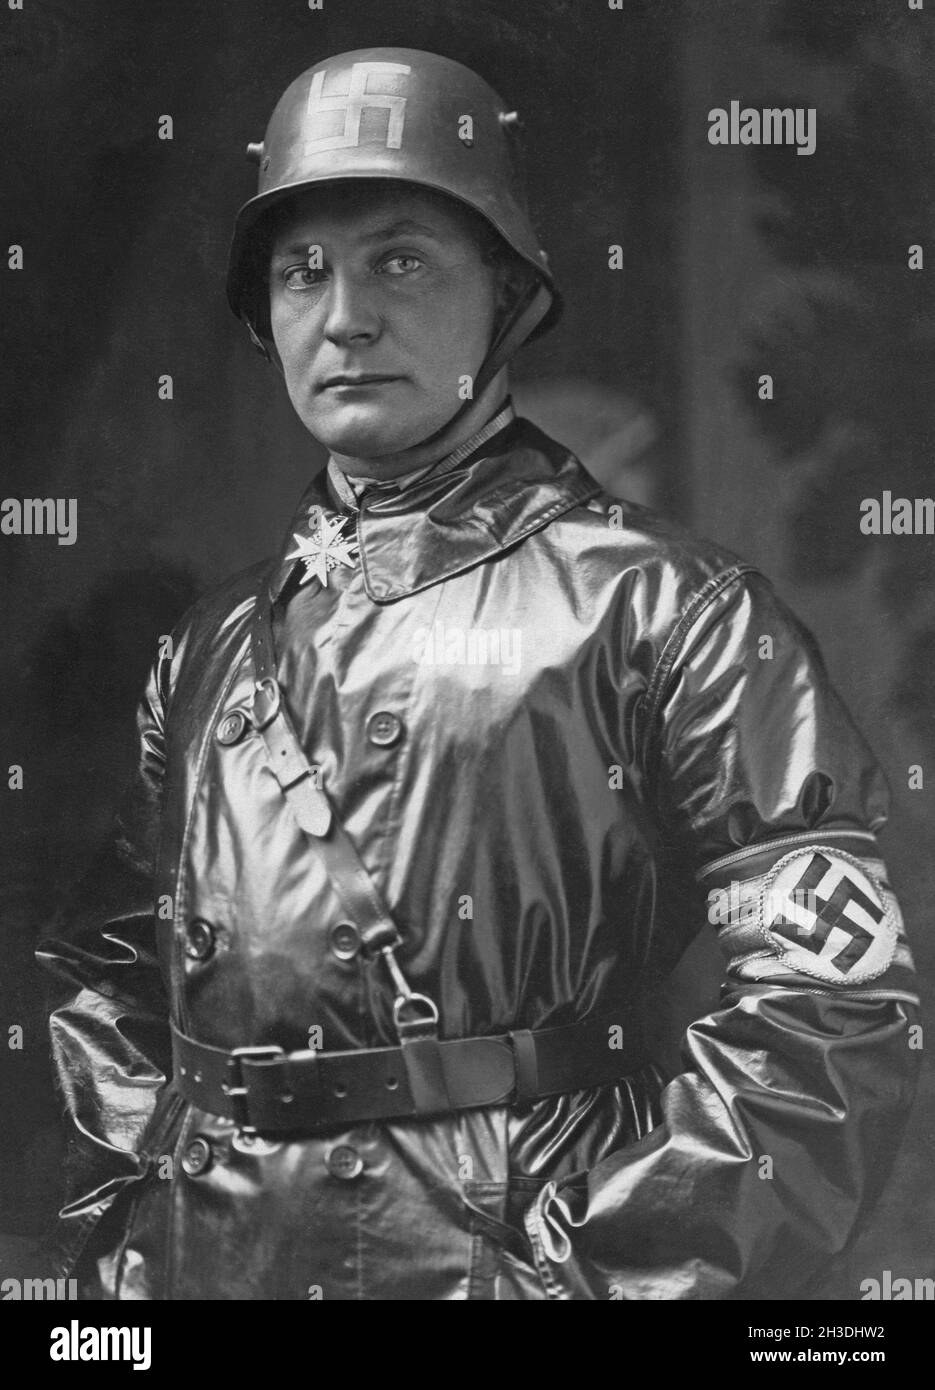 Hermann Göring. Politico tedesco, leader militare e criminale di guerra condannato. Nato il 12 1893 gennaio, morto il 15 ottobre 1946. Raffigurato nell'uniforme dello Sturmabteilung. L'ala paramilitare originale del partito nazista. Ha giocato un ruolo significativo in Adolf Hitlers salire al potere negli anni '20 e '30. Hermann Göring è stato affidato al comando della SA come Oberster SA-Führer nel 1923. Successivamente fu nominato SA-Gruppenführer (tenente generale) e tenne questo rango sui rotoli SA fino al 1945. La svastika nazista è vista sul suo braccio e sul suo casco. Foto Stock